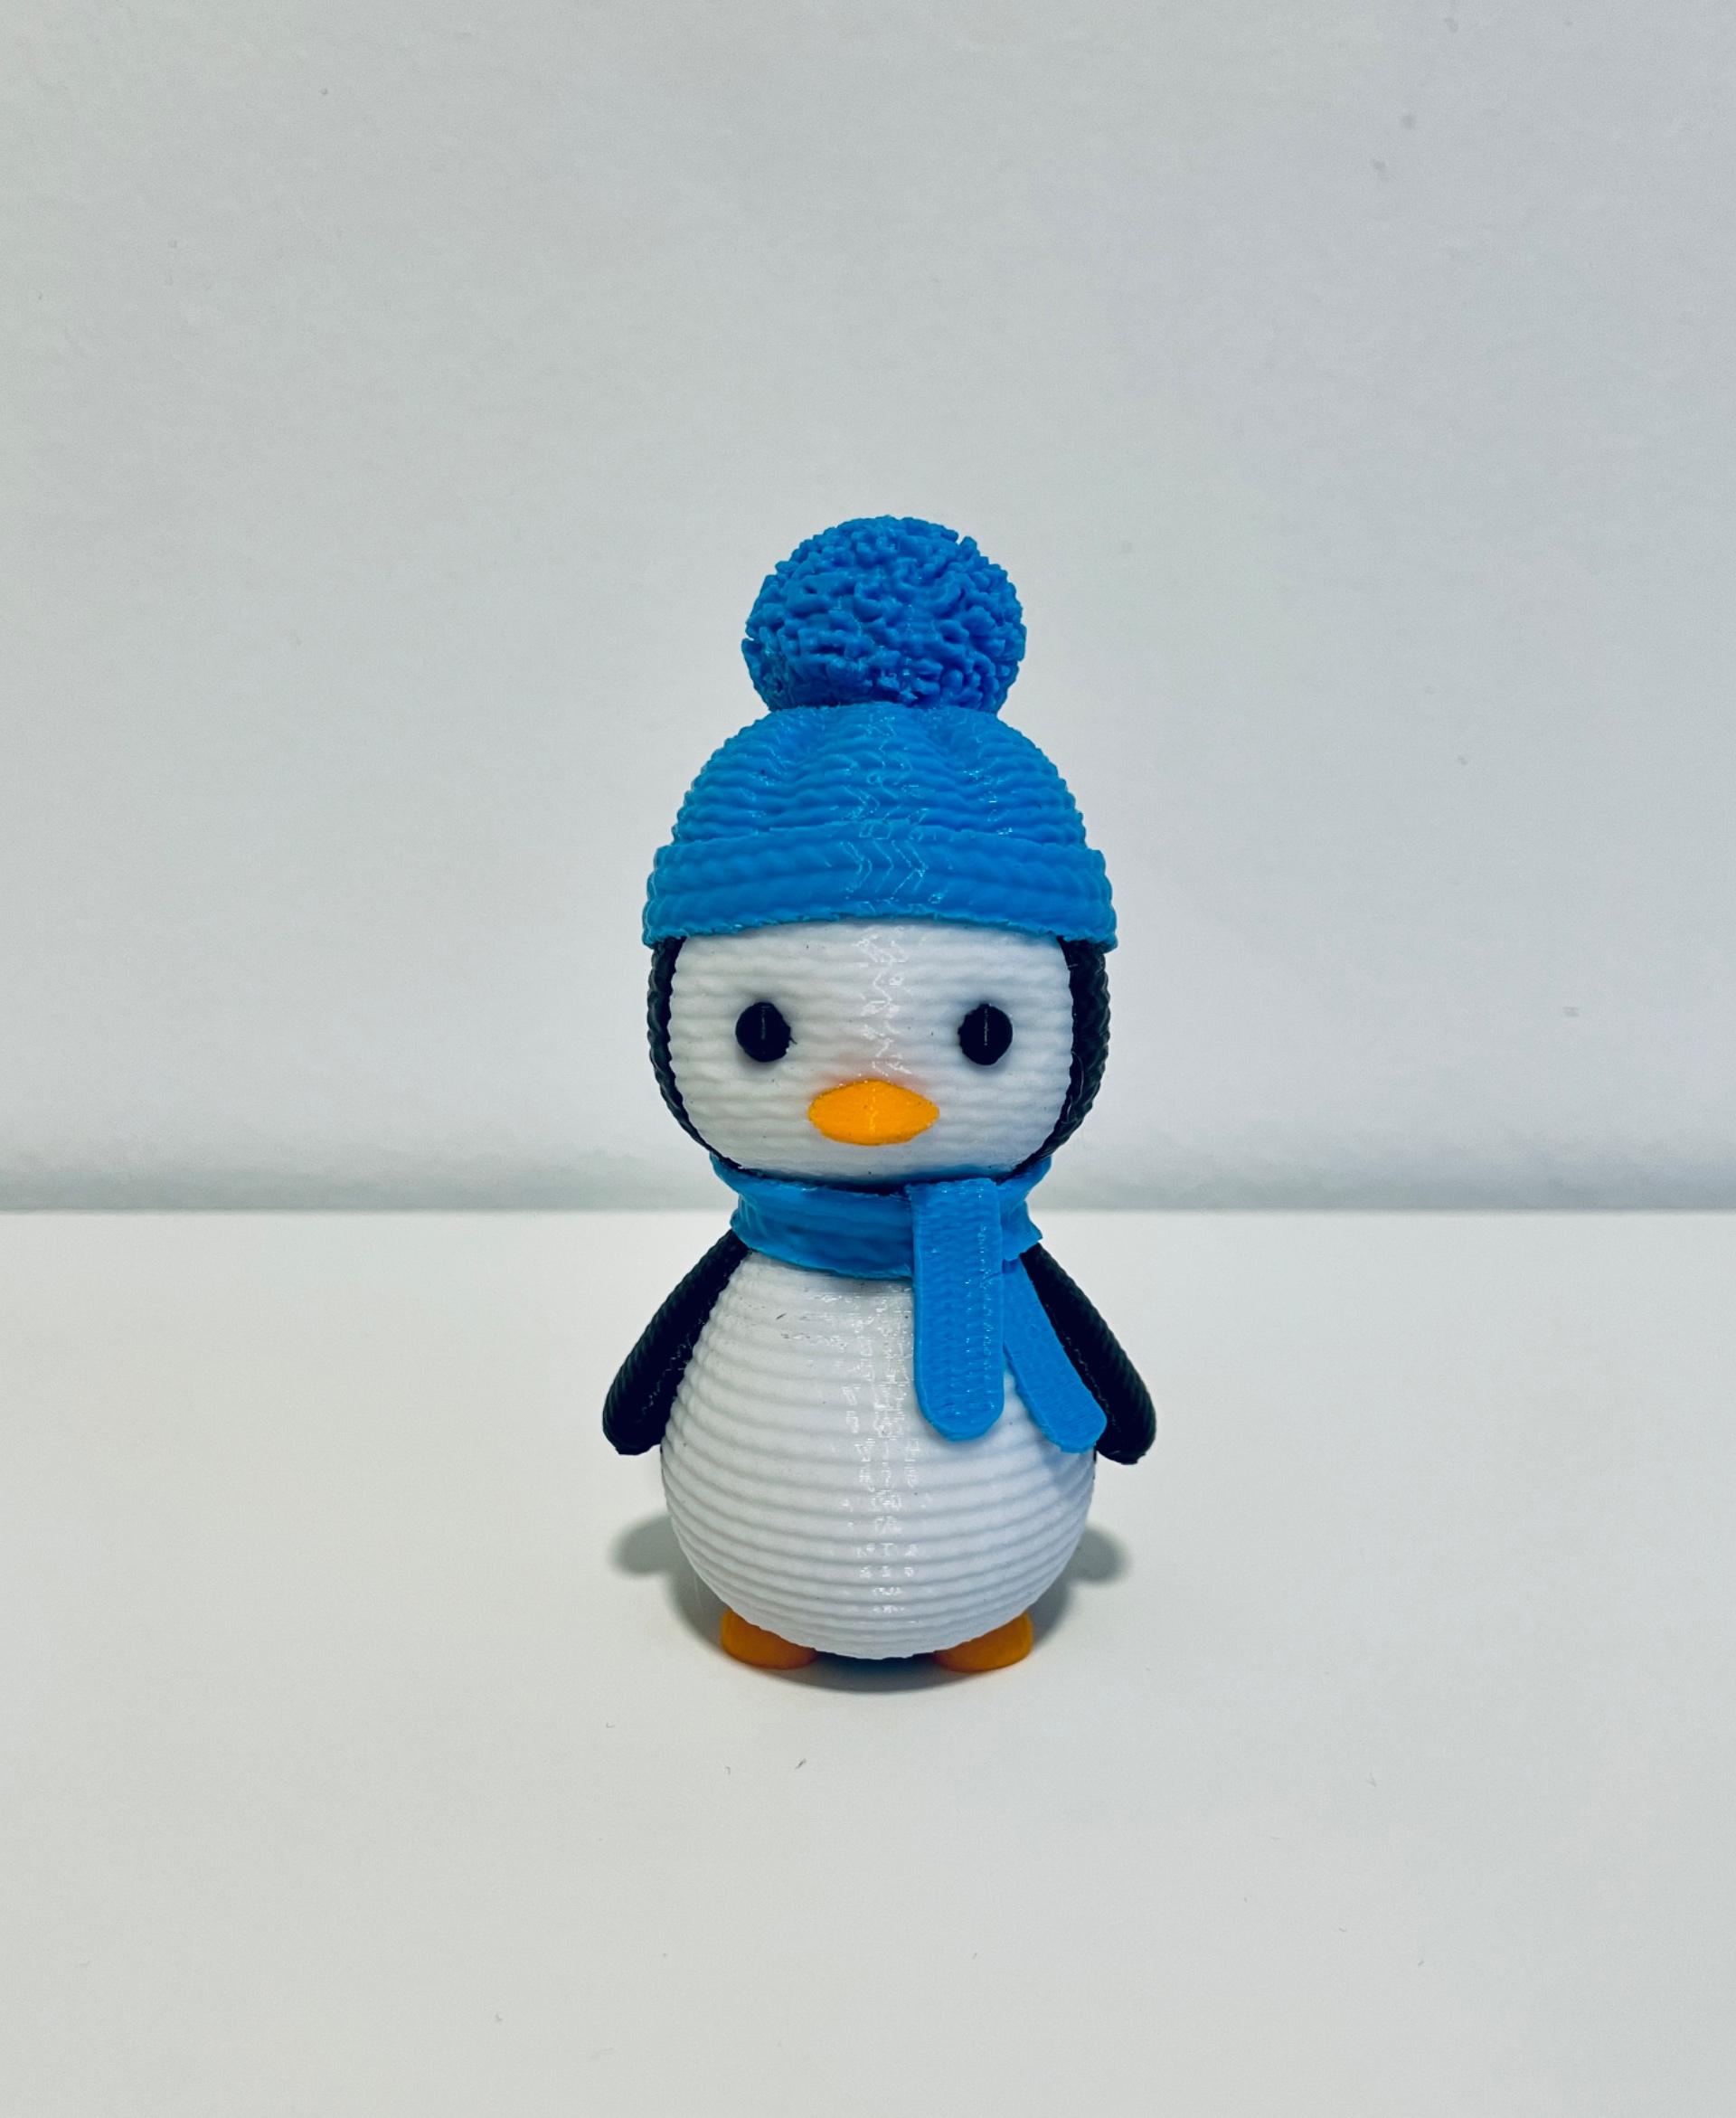 Crochet Penguin 3 3d model